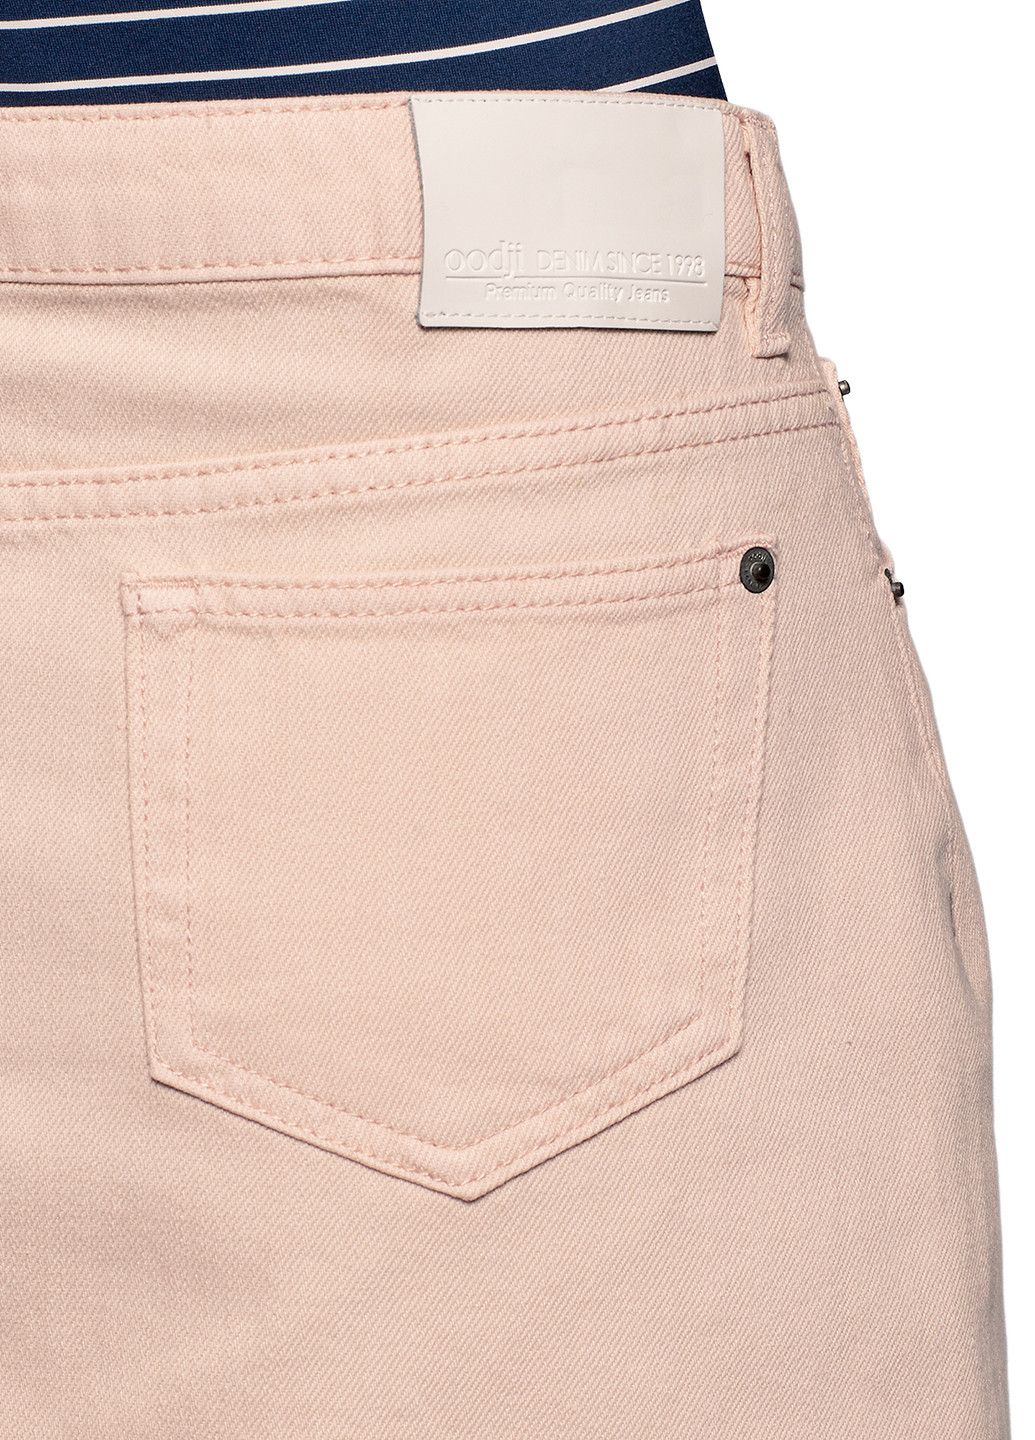 Розовая джинсовая однотонная юбка Oodji карандаш